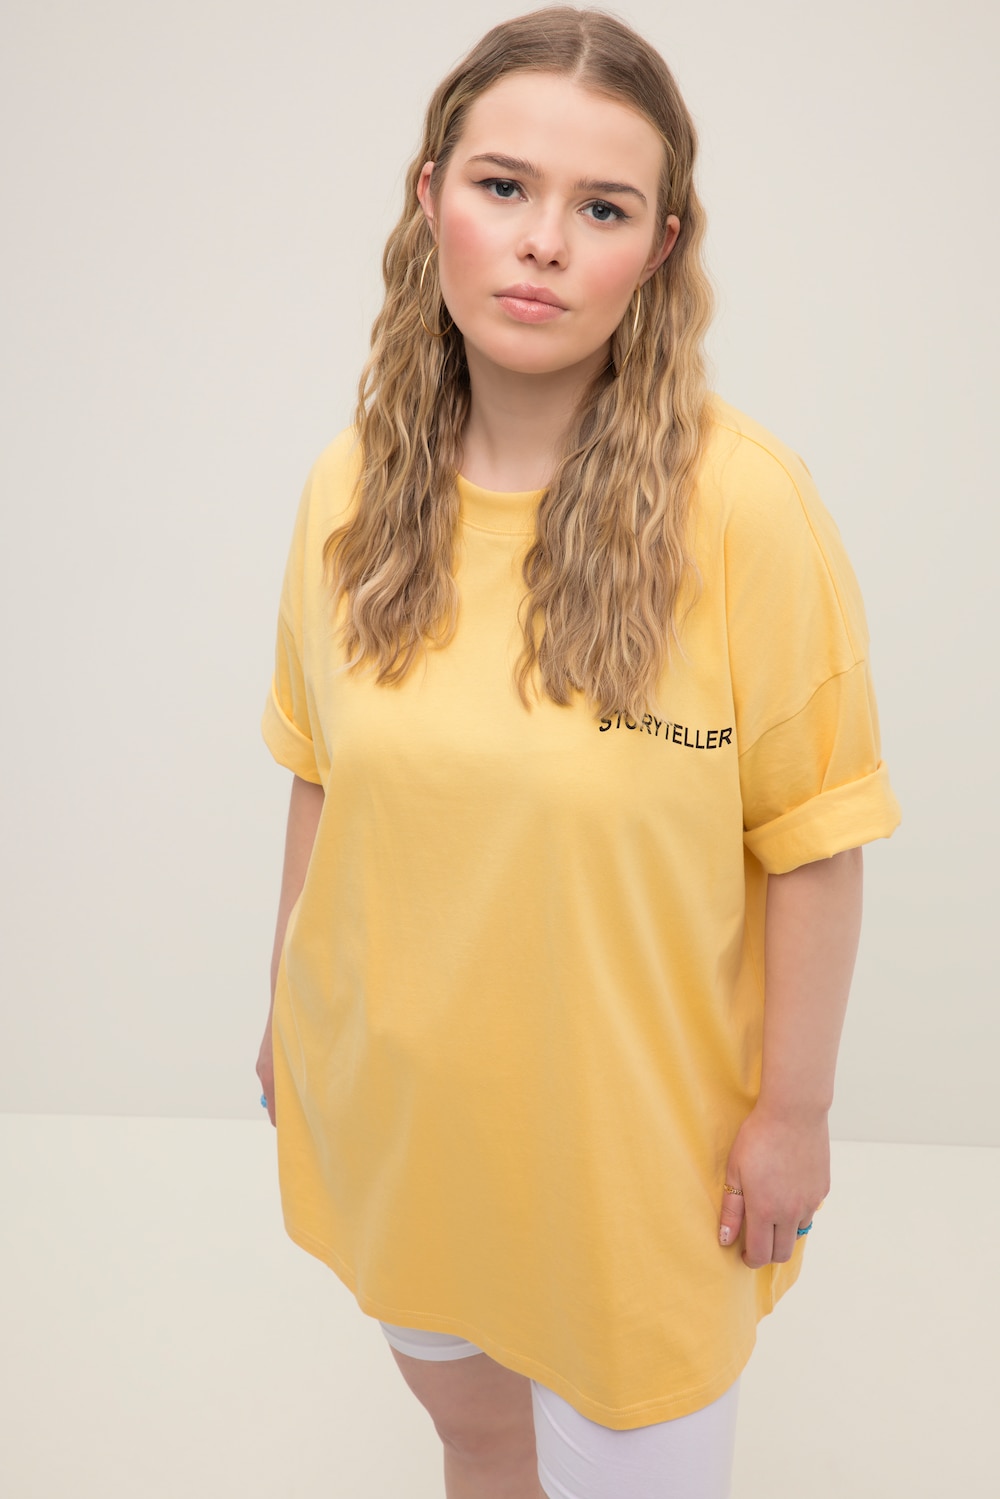 Grote Maten T-shirt, Dames, geel, Maat: 54/56, Katoen, Studio Untold